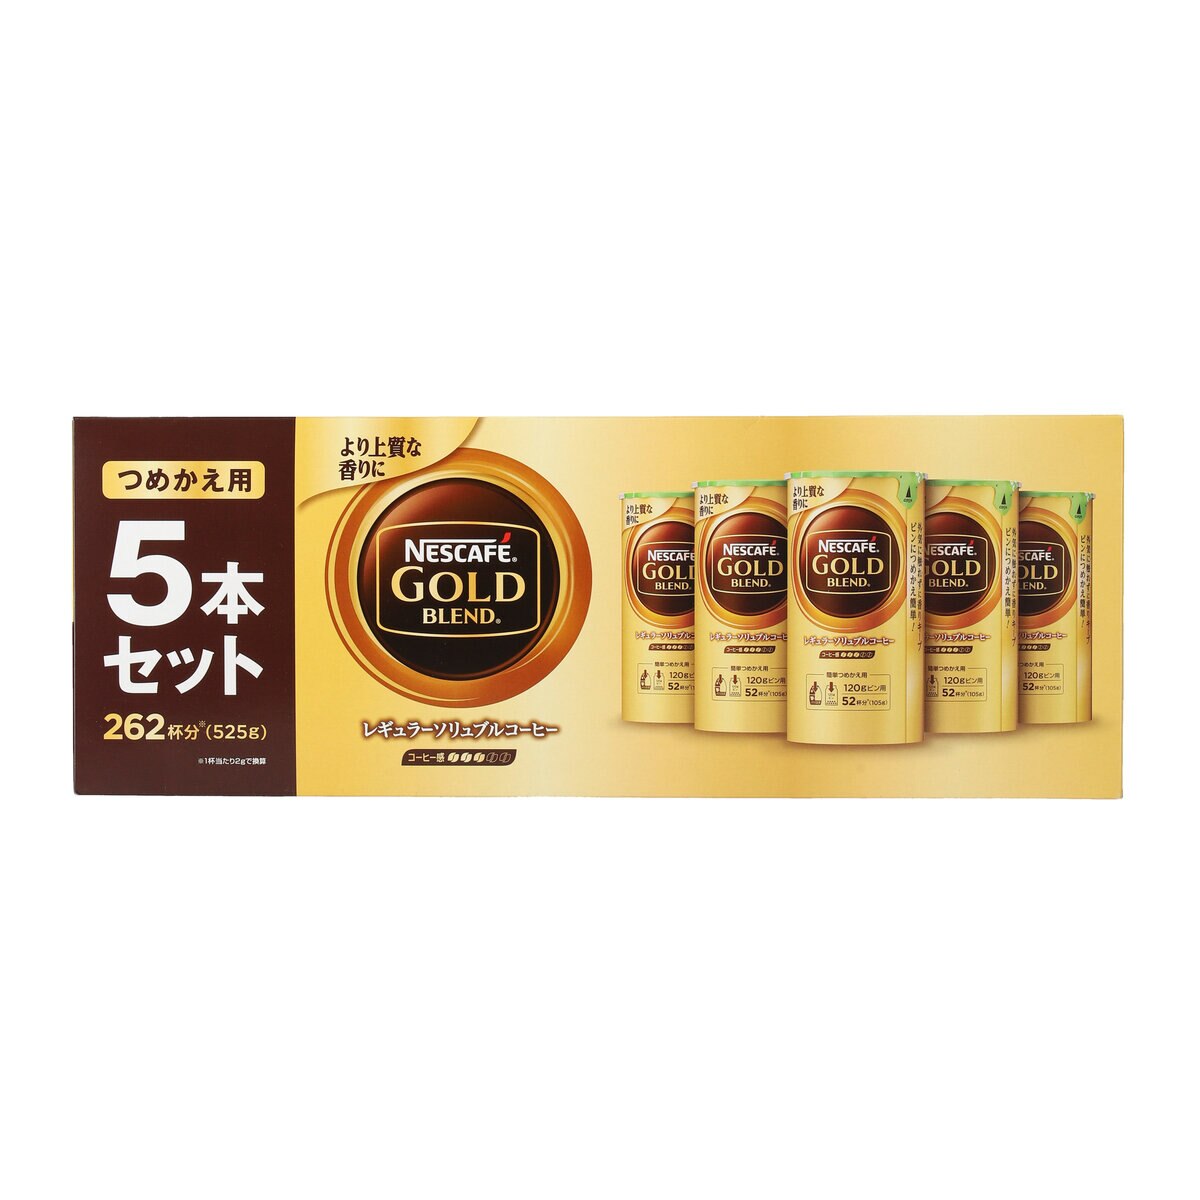 ネスカフェ ゴールドブレンド 5本パック  Costco Japan